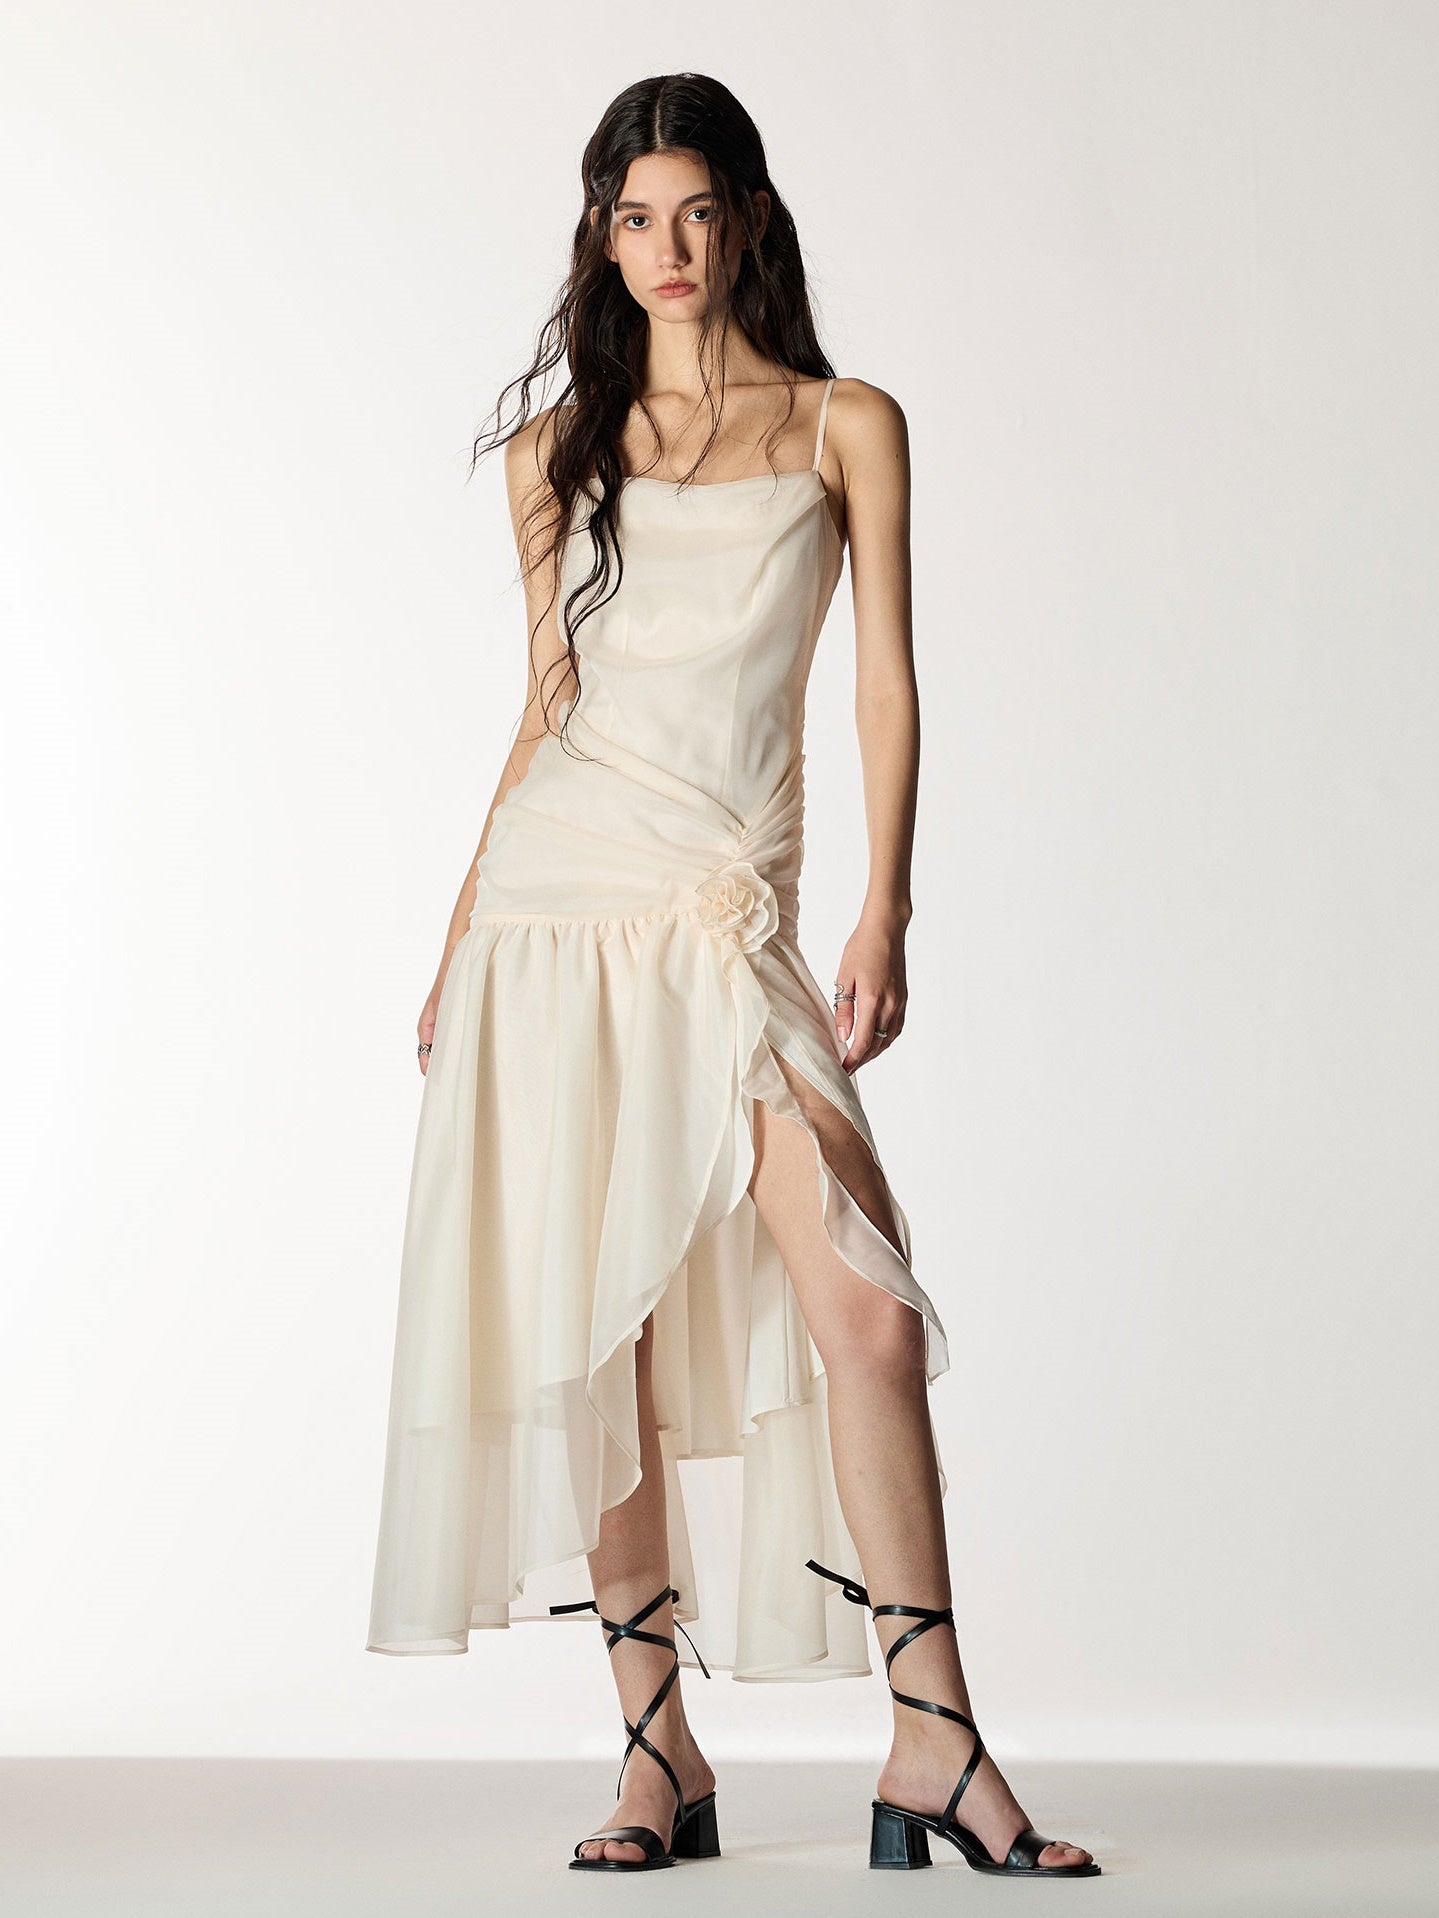 ARCANA ARCHIVE ドレス袖丈71cm